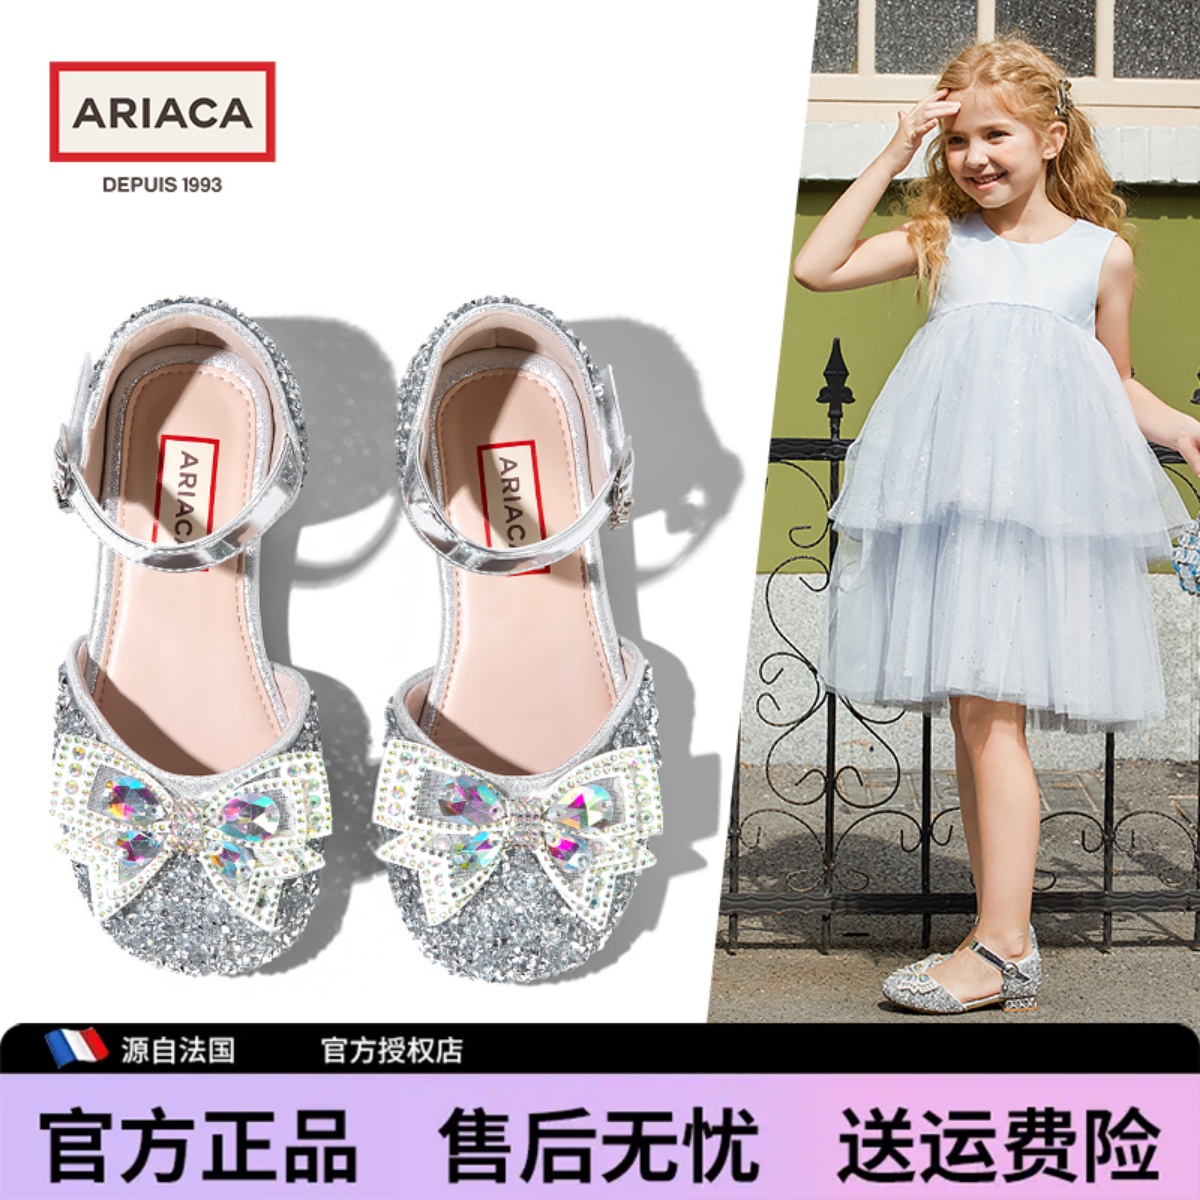 新款ARIACA艾芮苏女童凉鞋夏季公主鞋小女孩水晶鞋儿童高跟鞋